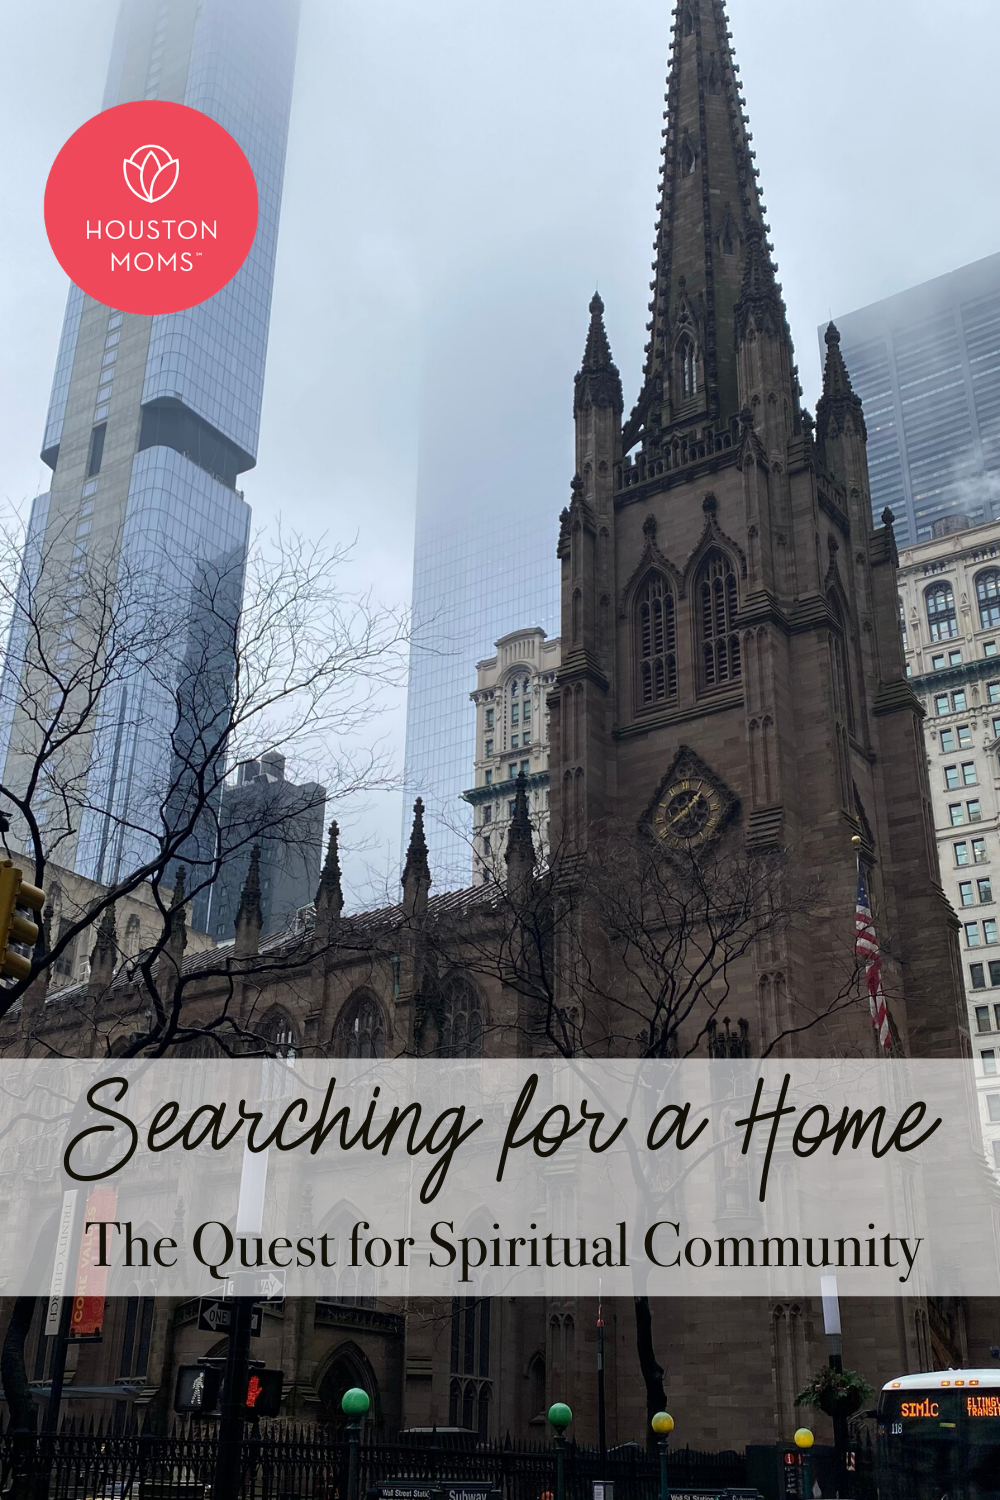 Houston Moms "Searching for a Home:: The Quest for Spiritual Community" #houstonmoms #houstonmomsblog #momsaroundhouston